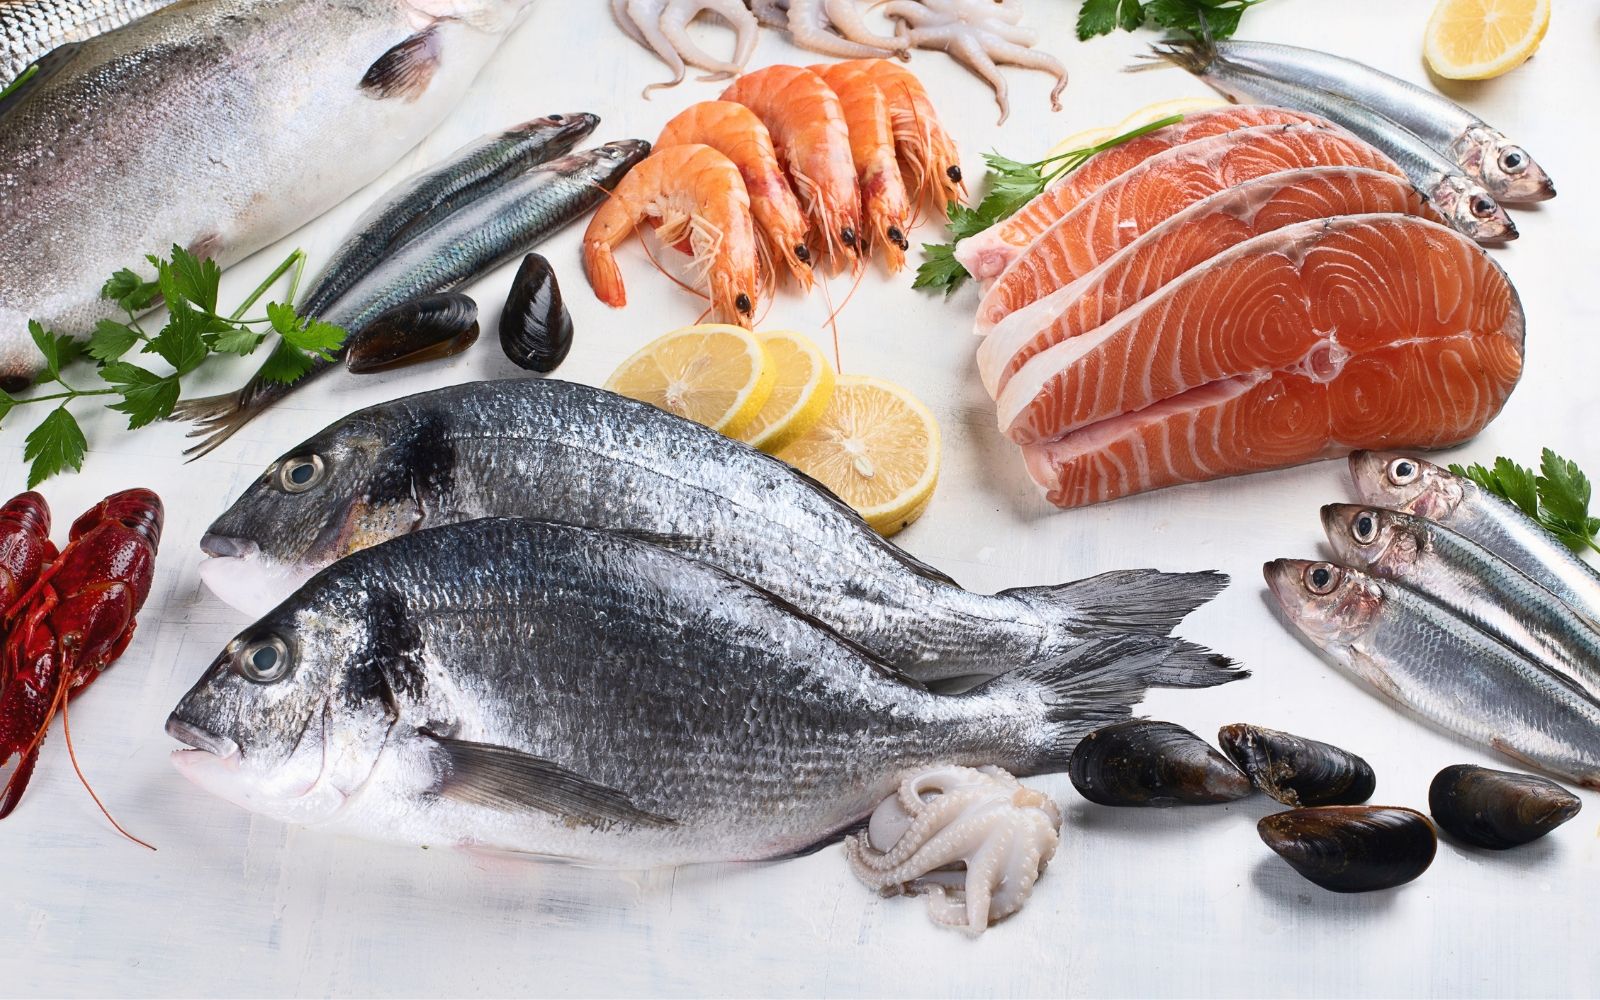 Cómo leer un etiquetado de pescado? Consumo responsable